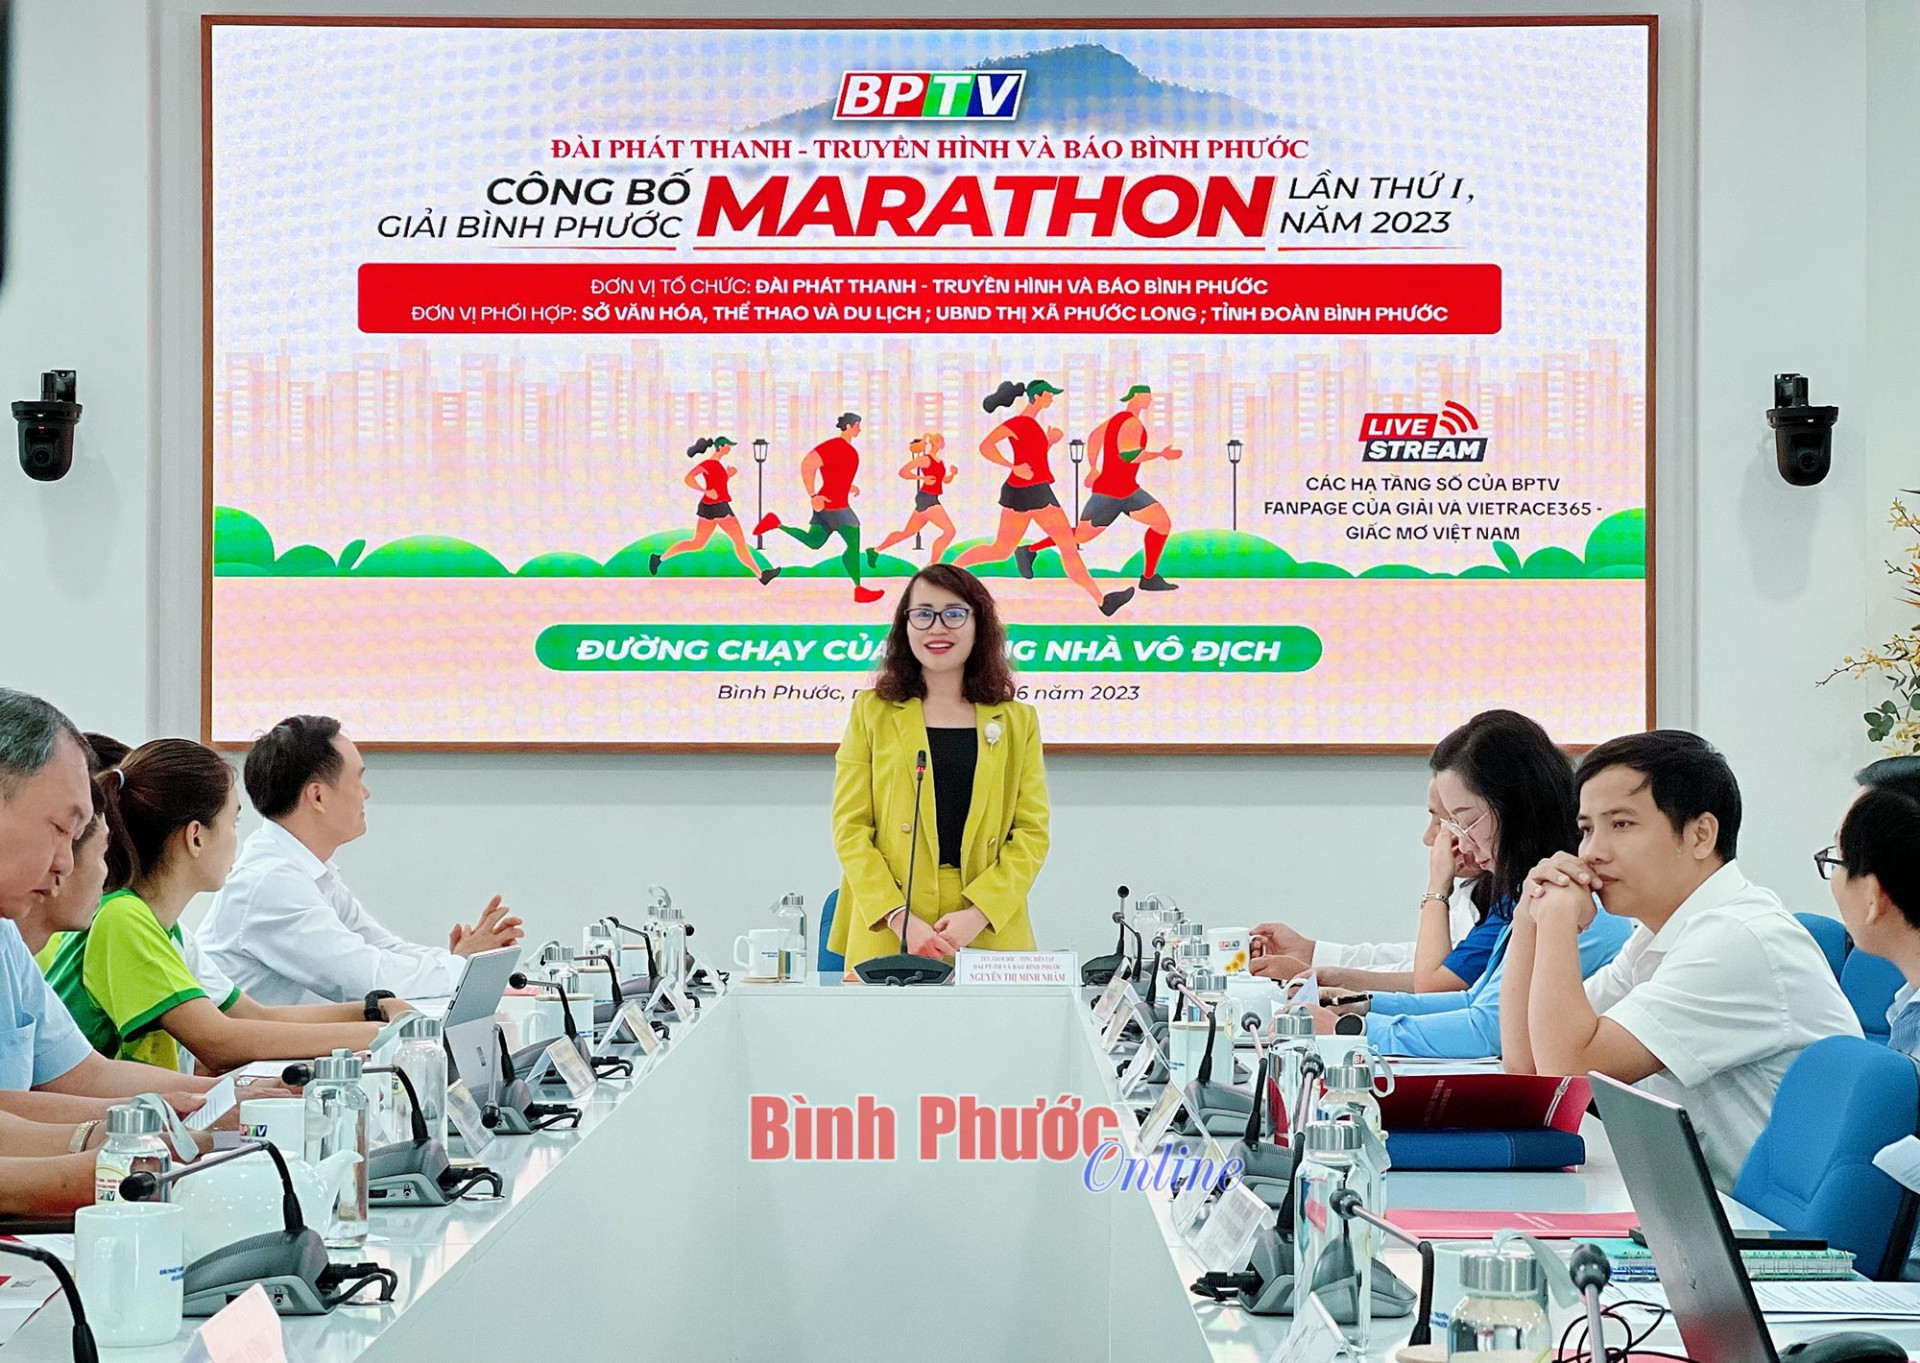 Tỉnh ủy viên, Giám đốc - Tổng Biên tập BPTV Nguyễn Thị Minh Nhâm, Trưởng Ban tổ chức giải Bình Phước marathon lần thứ I, năm 2023 phát biểu công bố giải

